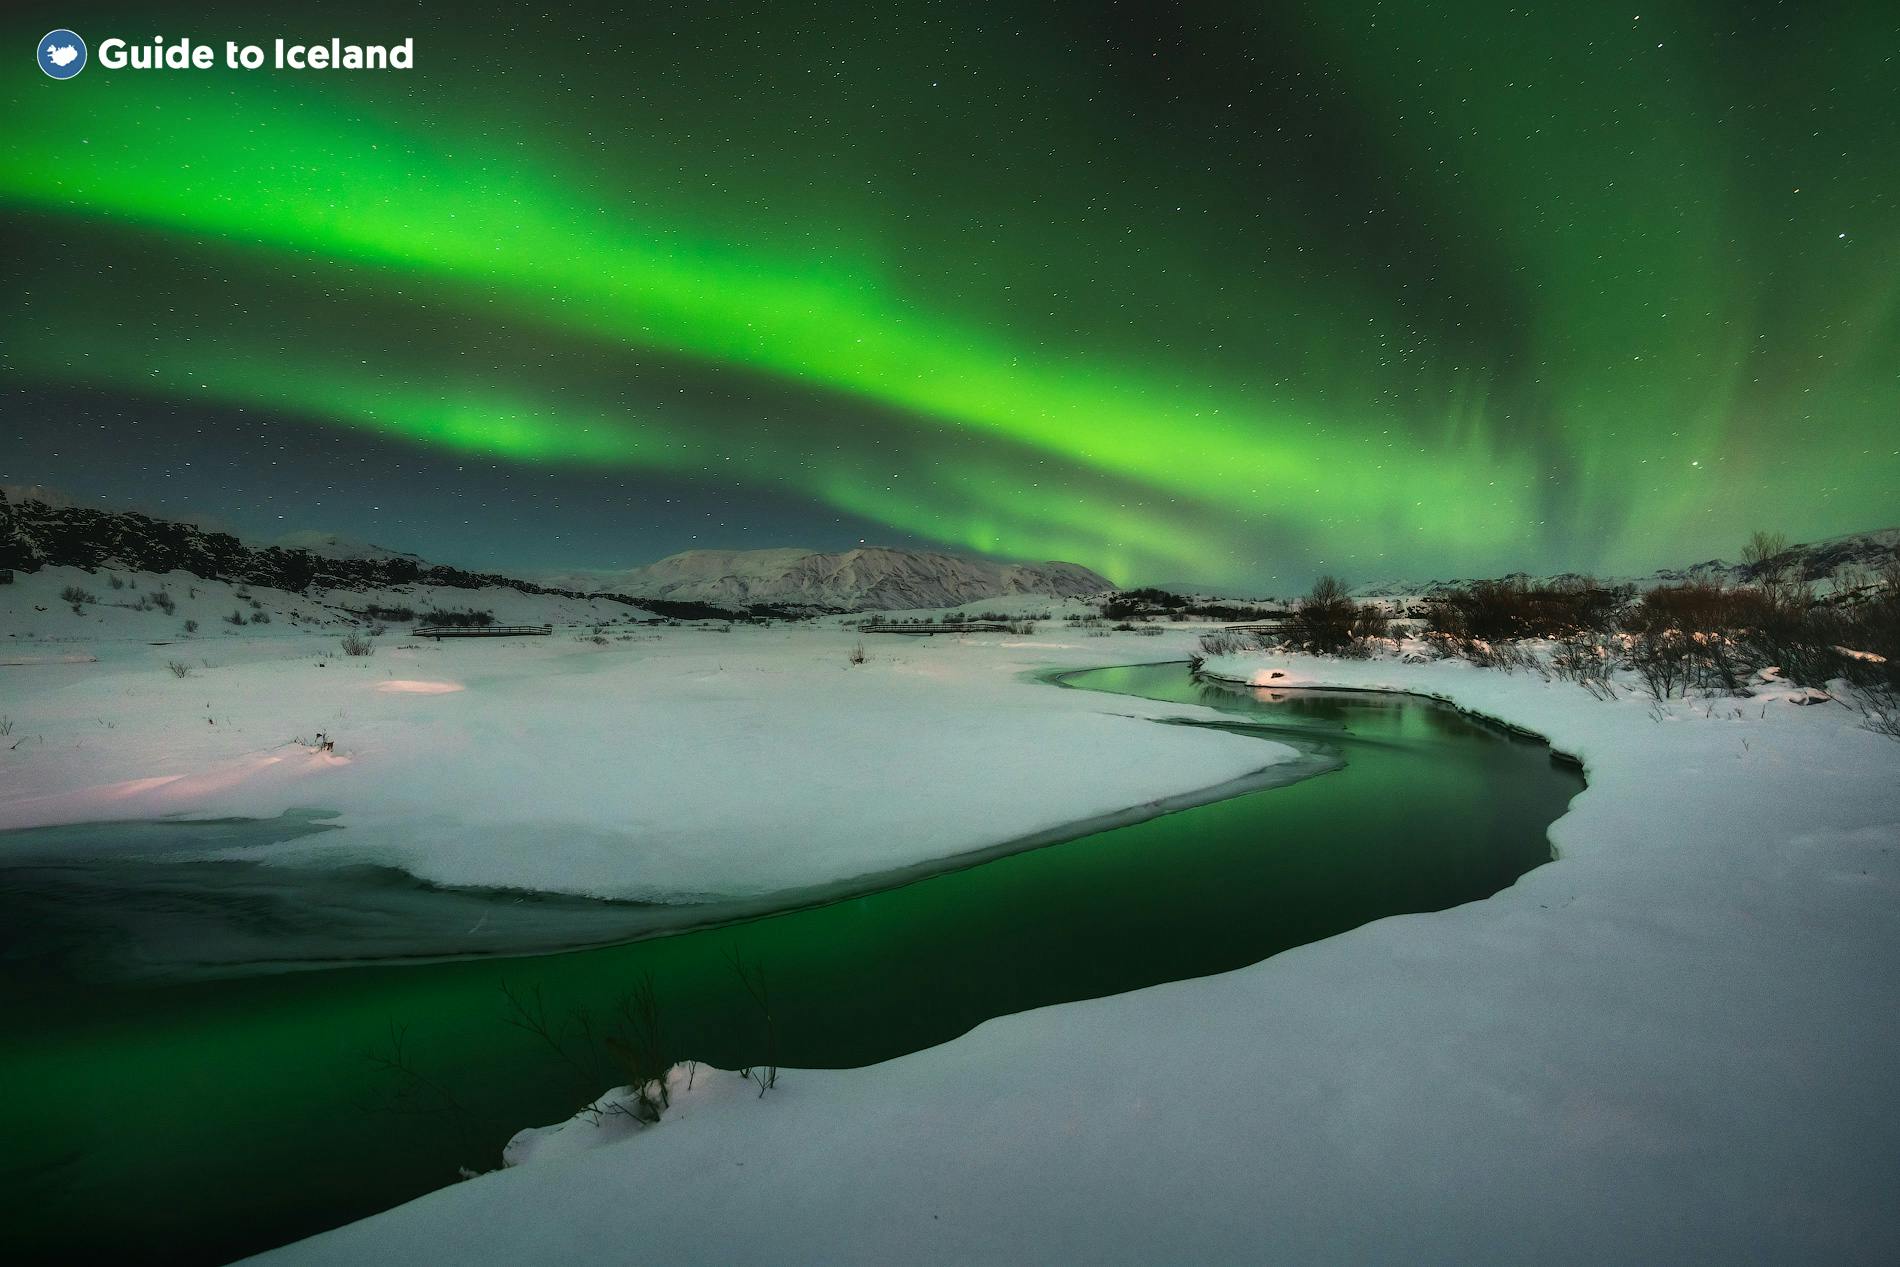 La aurora boreal se manifiesta en el cielo sobre un lago en Islandia durante el invierno.